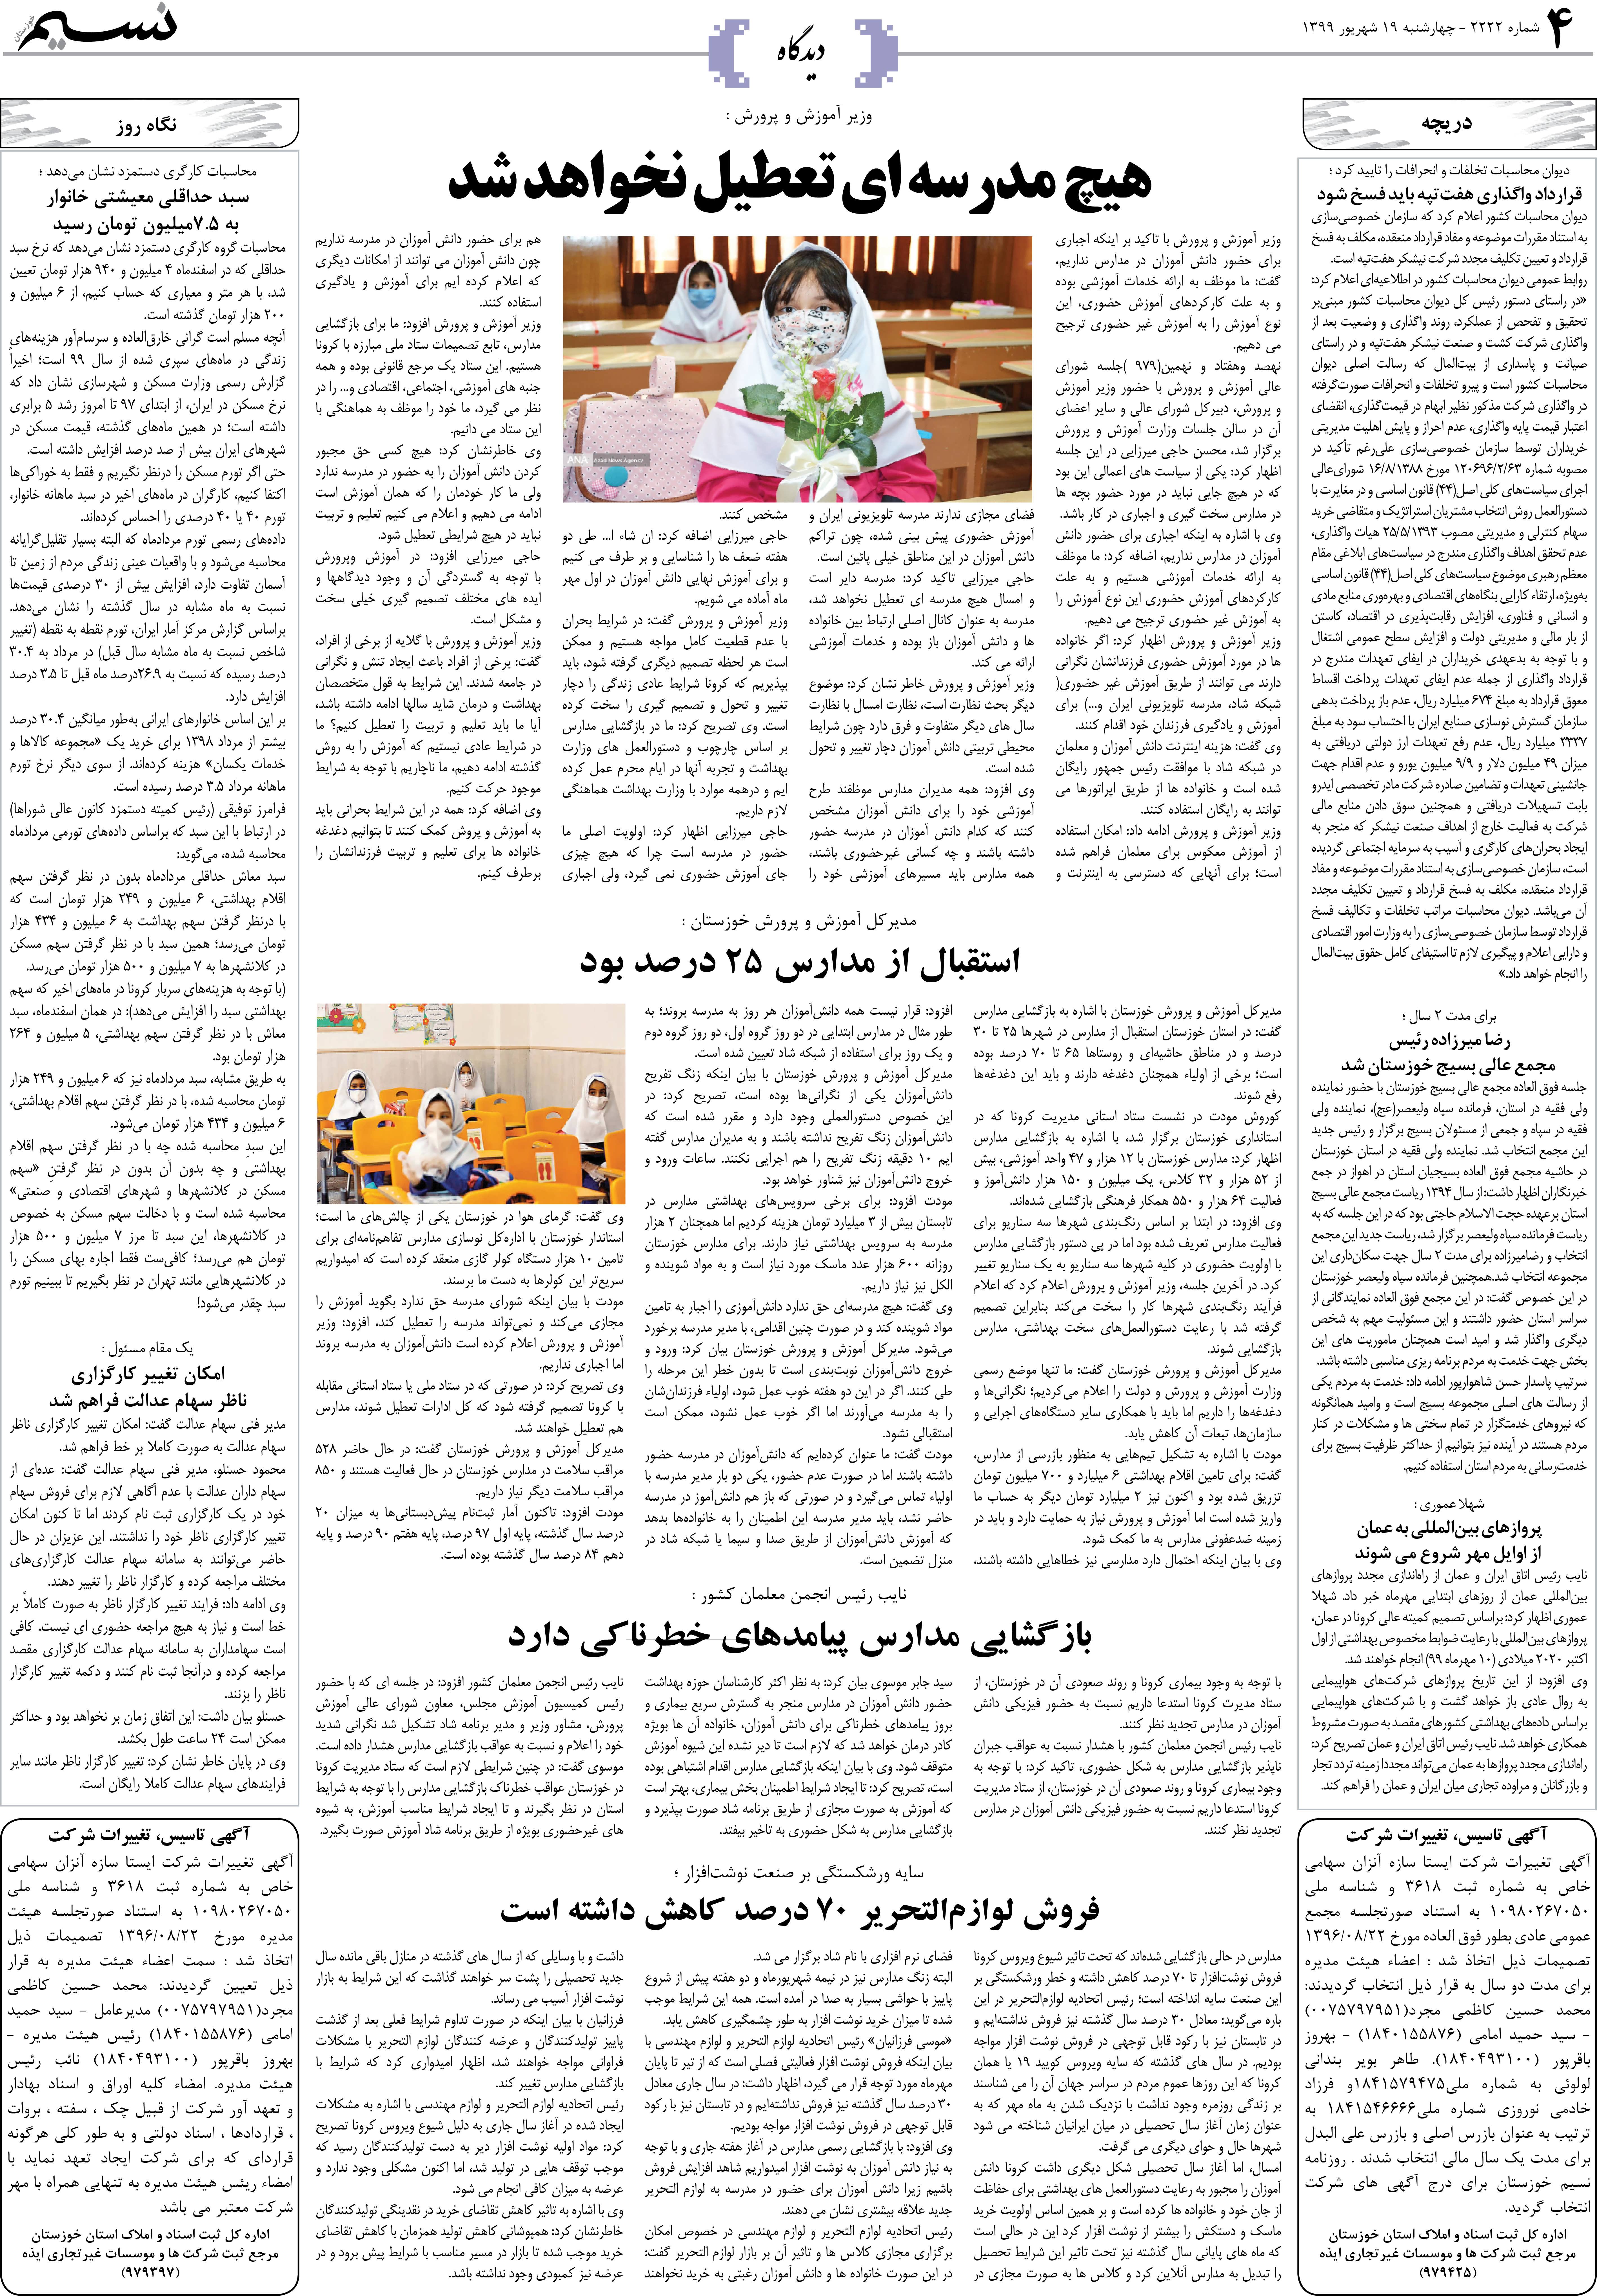 صفحه دیدگاه روزنامه نسیم شماره 2222